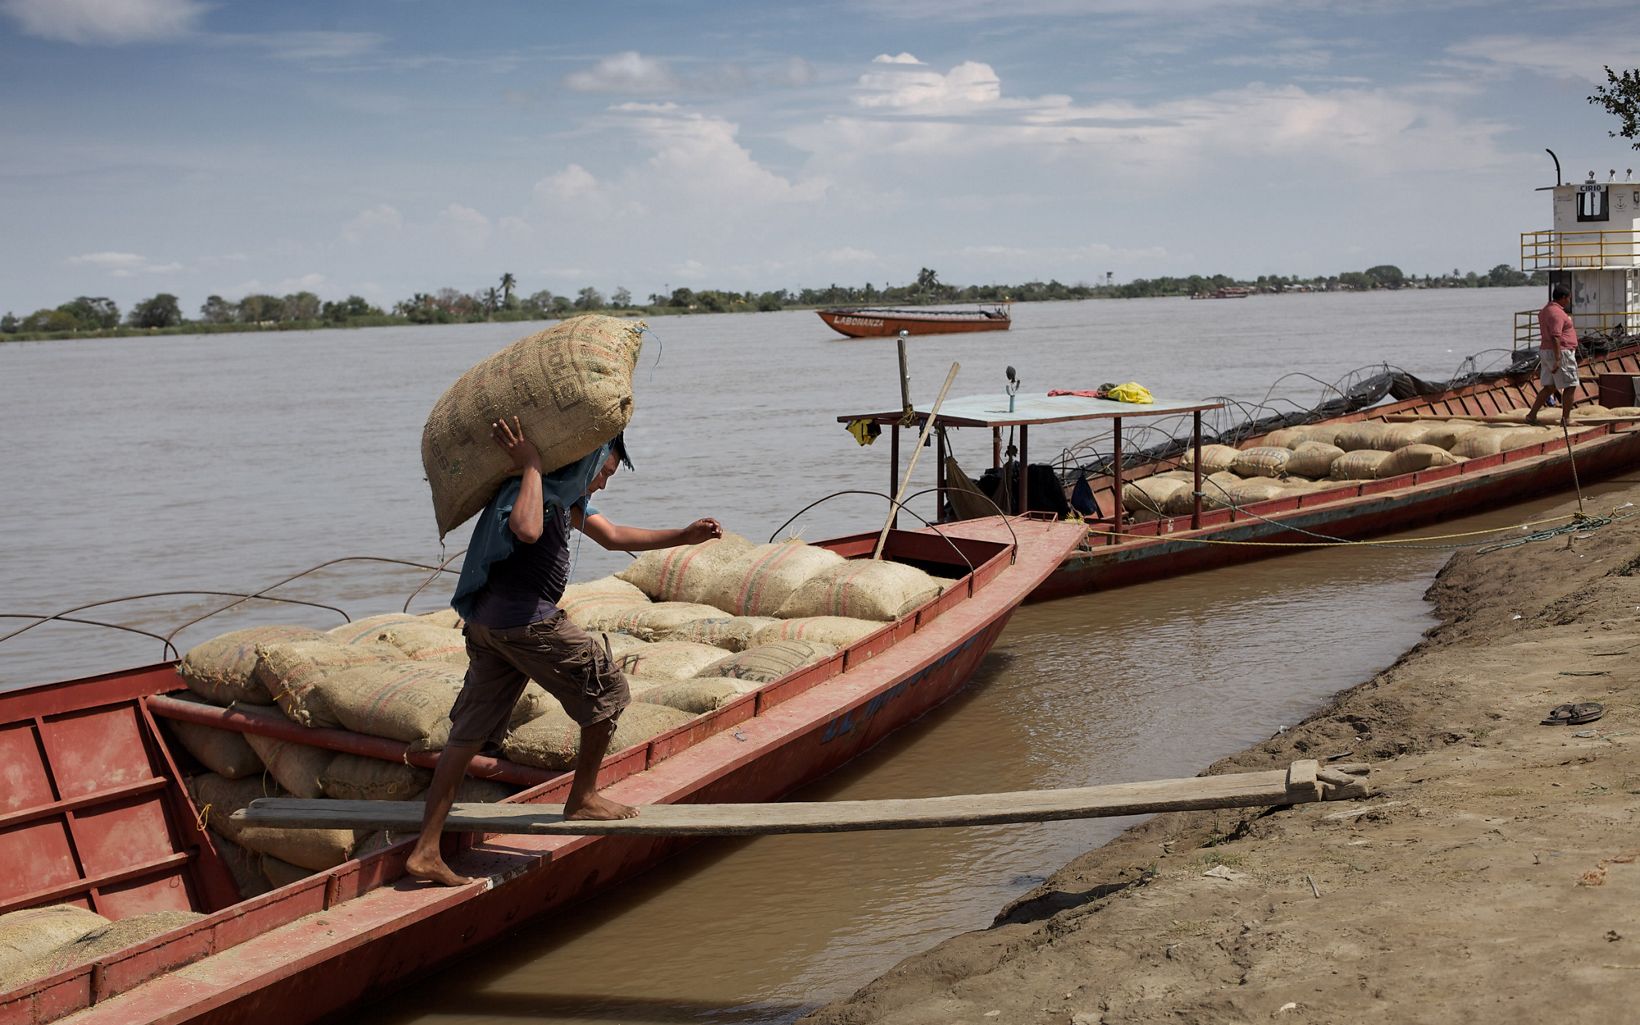 Comercio en el río Magdalena 
El río Magdalena cubre el 24% del territorio nacional y es una fuerza vital económica para los más de 30 millones de colombianos que viven en la cuenca. © Paul Smith